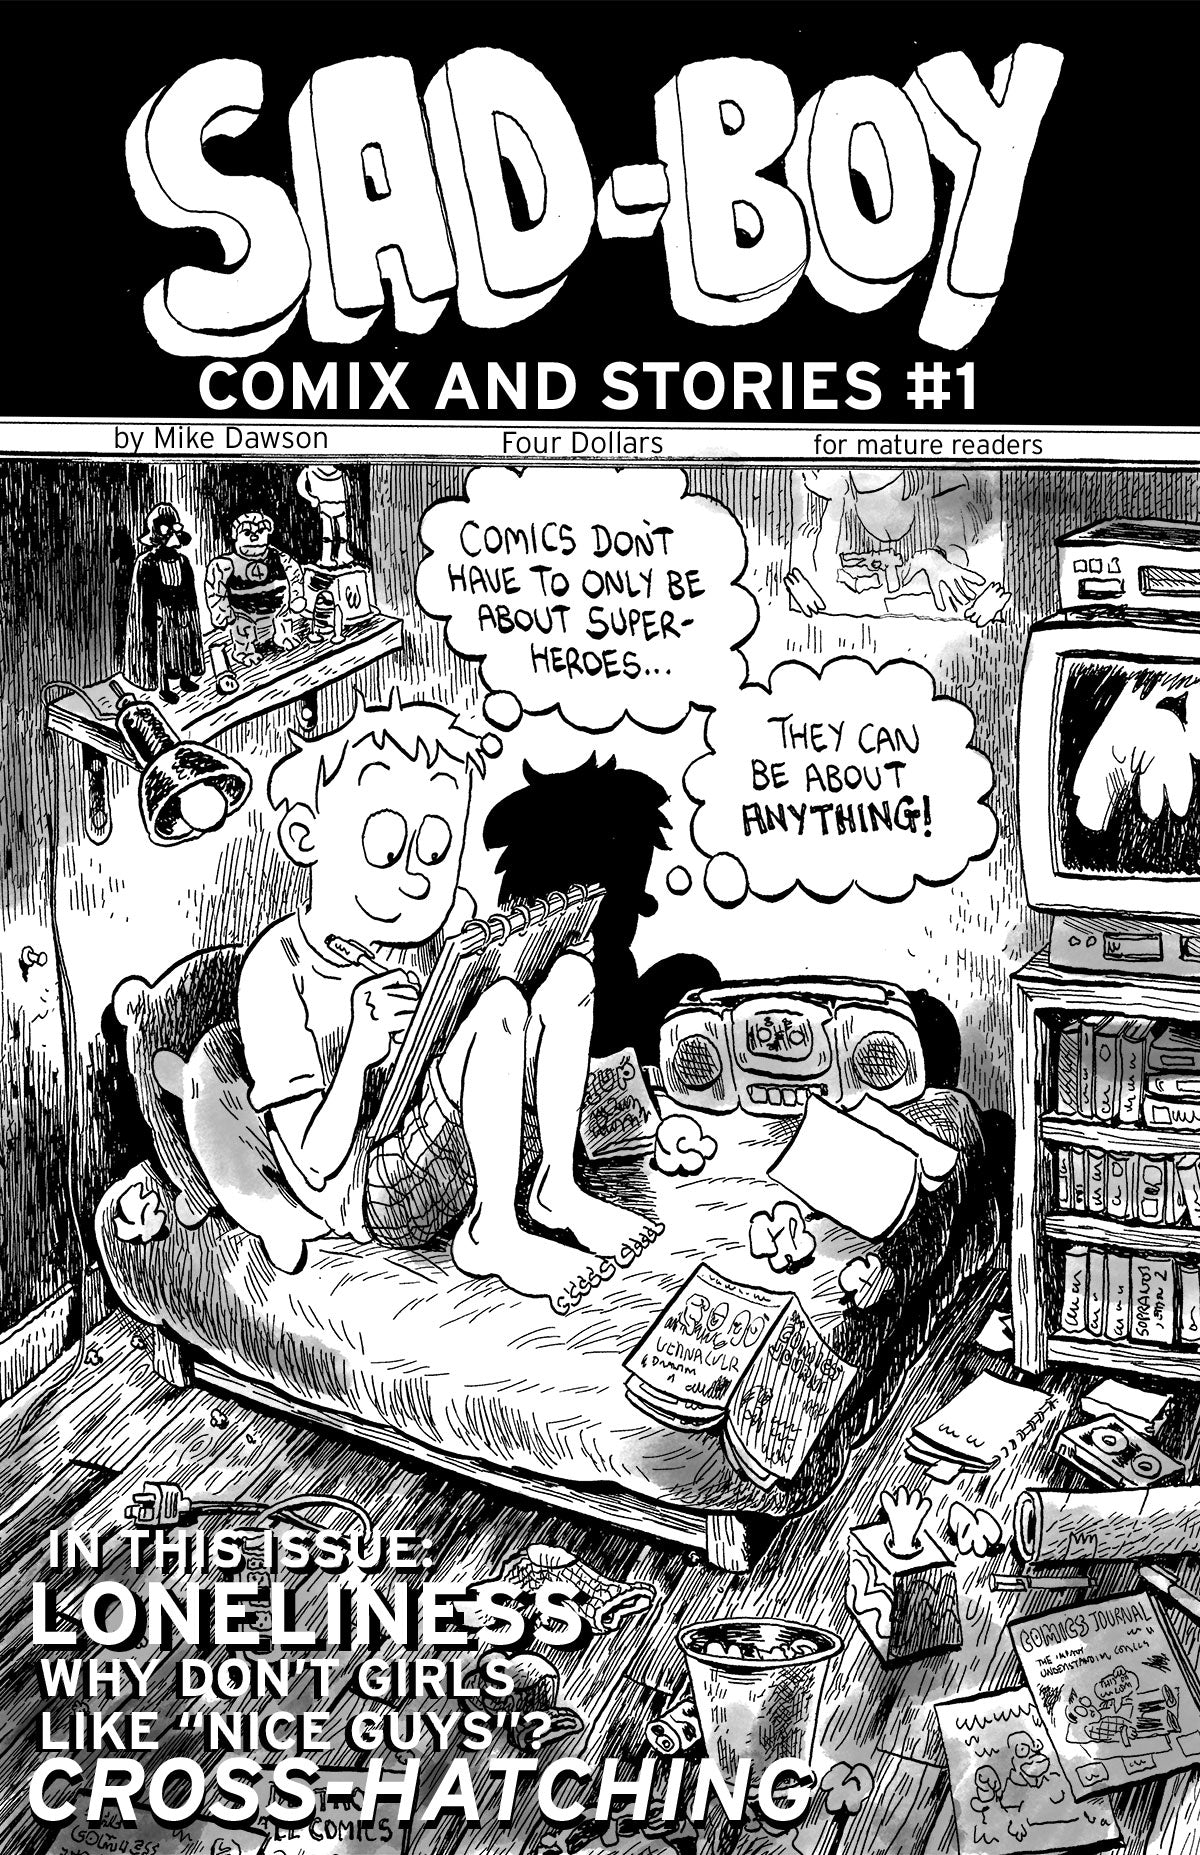 SAD-BOY COMIX & STORIES #1